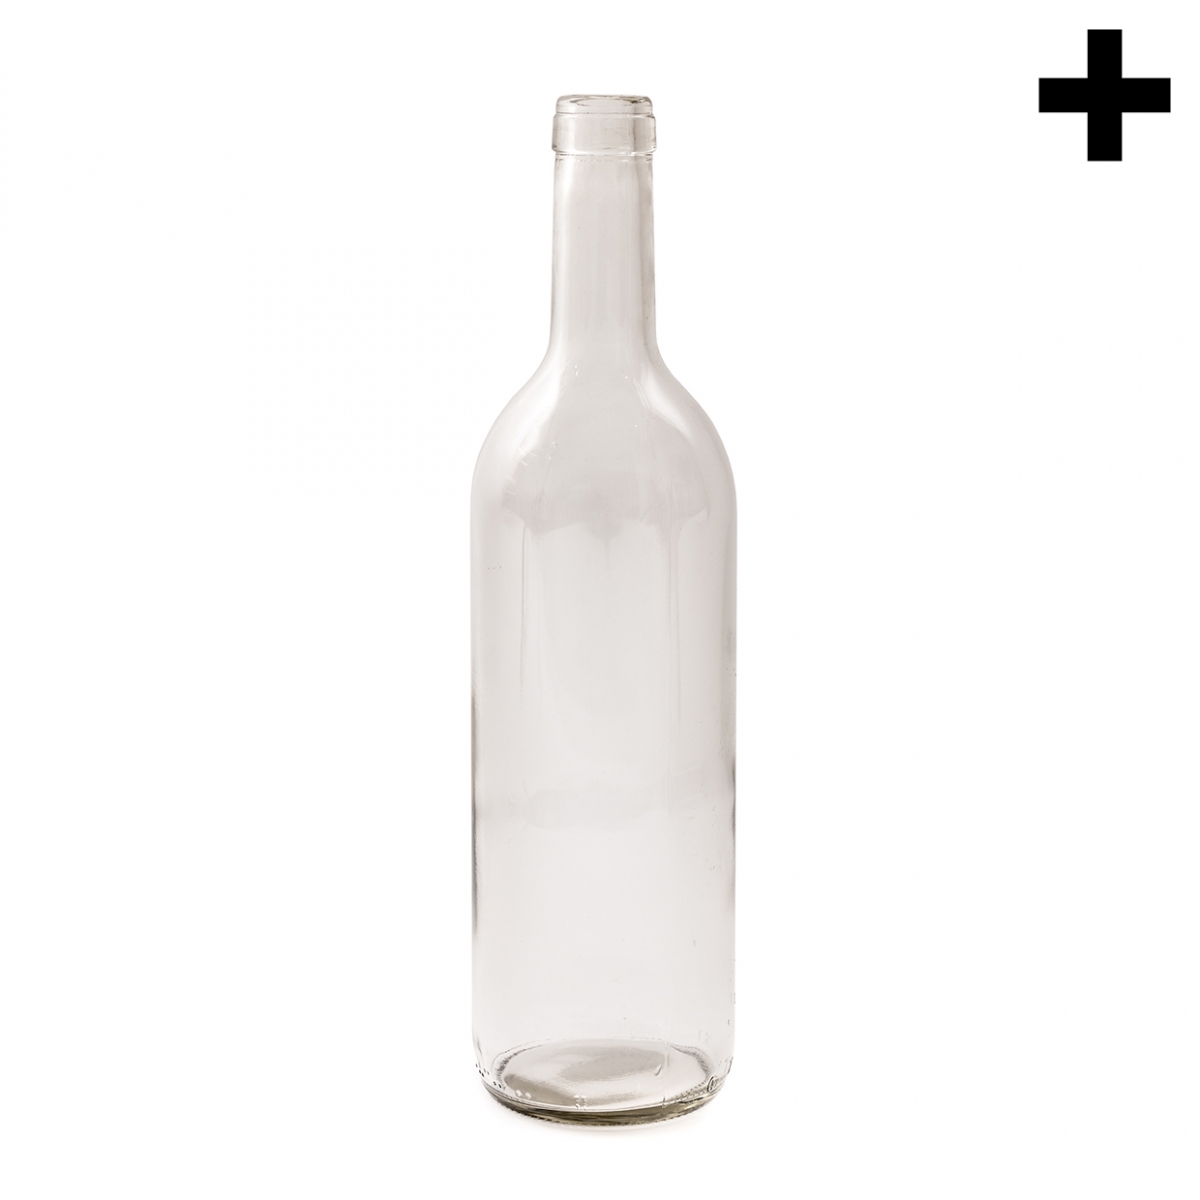 Imagen en la que se ve una botella de cristal blanco vacía